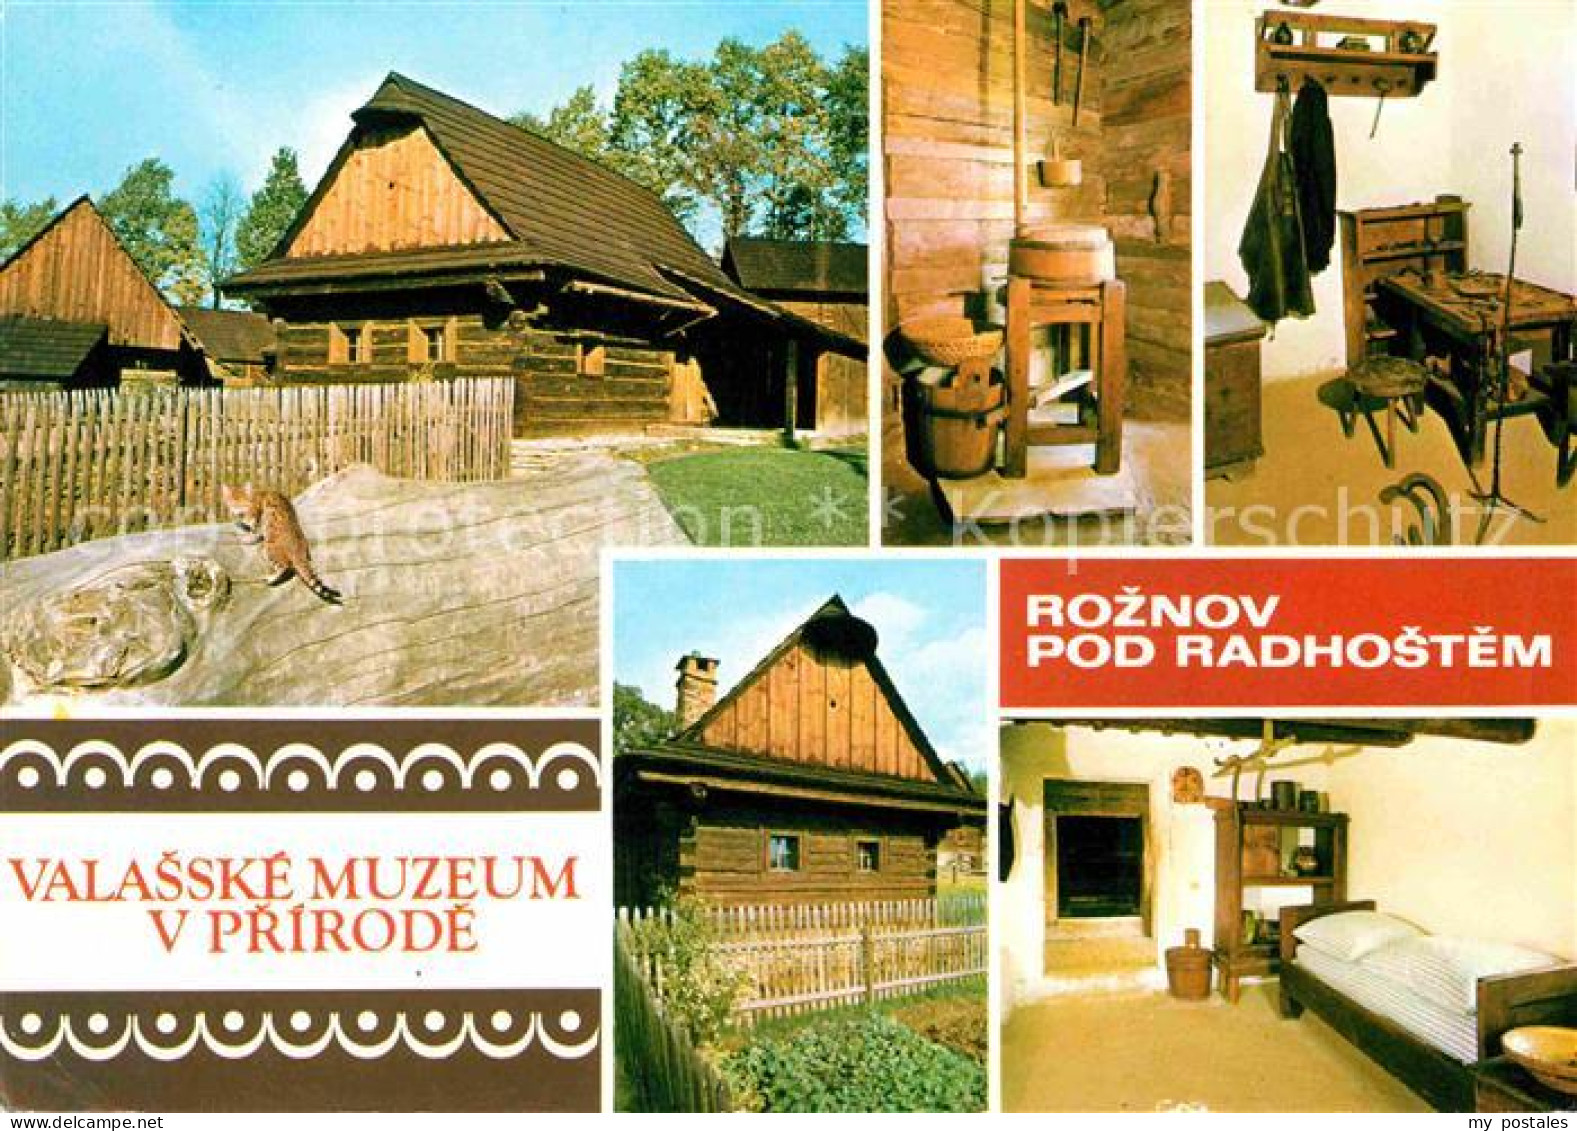 72683453 Roznov Pod Radhostem Valasske Muzeum V Prirode Roznov Pod Radhostem - Czech Republic